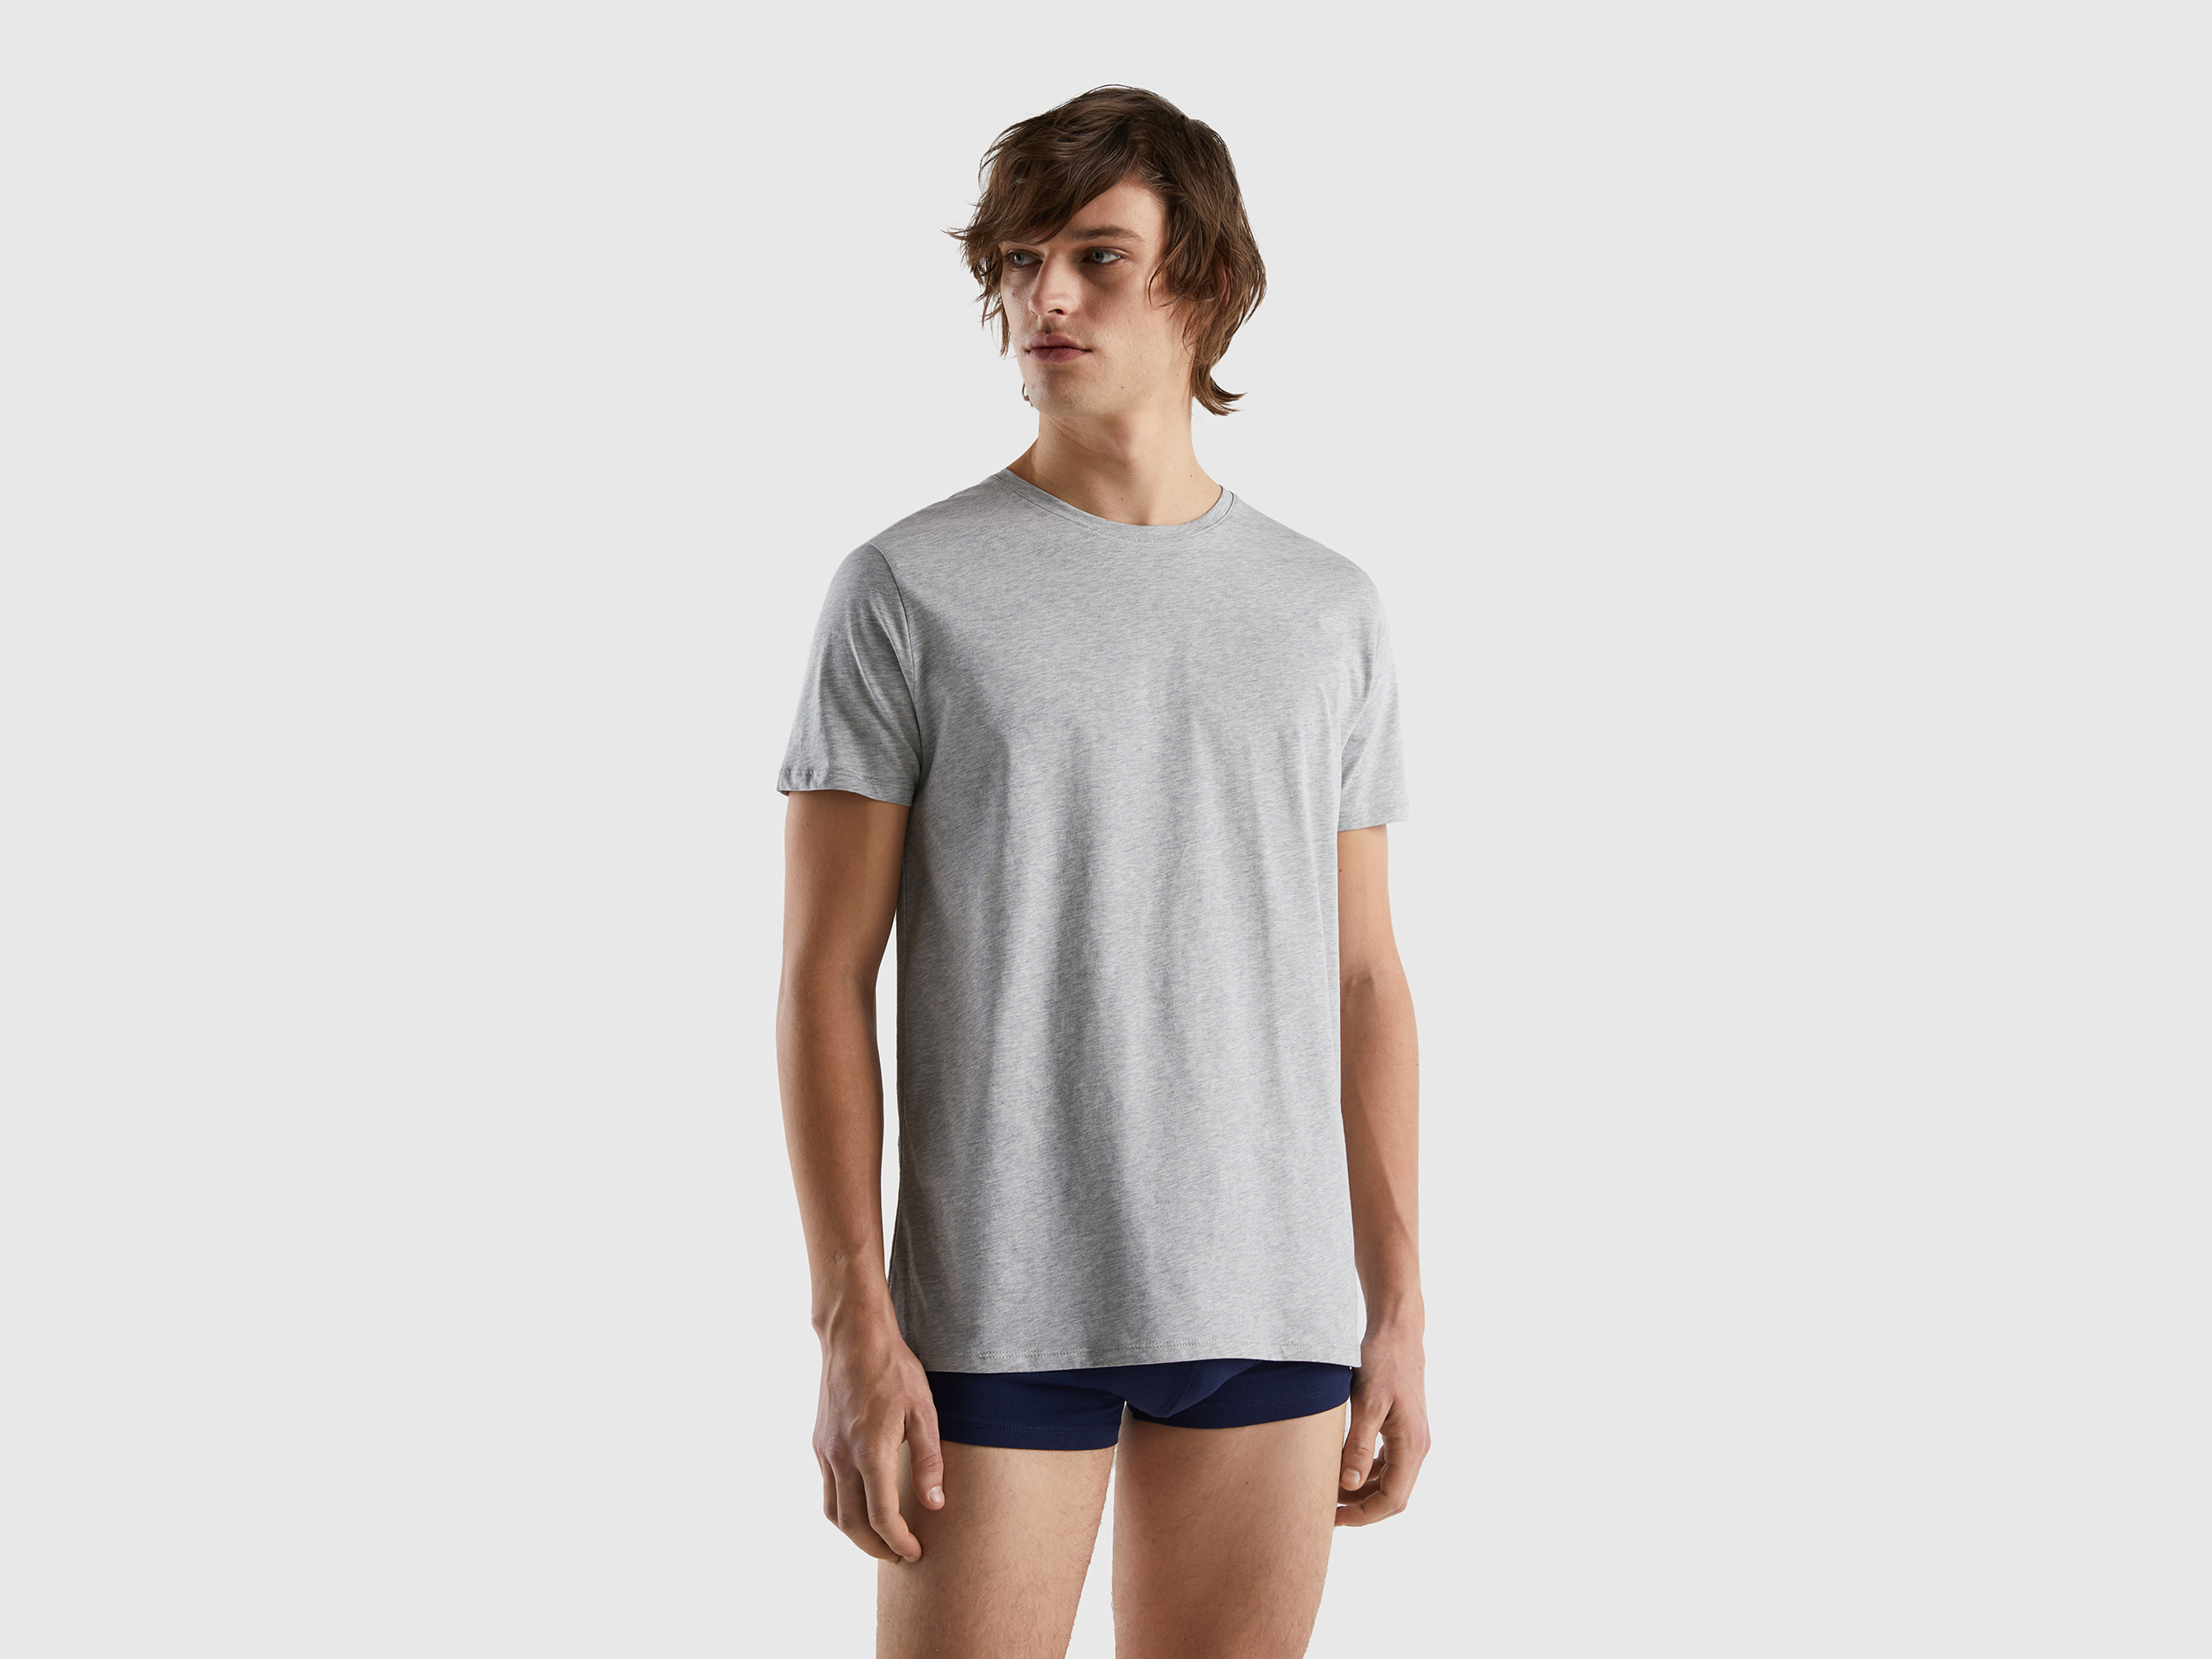 Benetton, Long Fiber Cotton T-shirt, size XL, Light Gray, Men